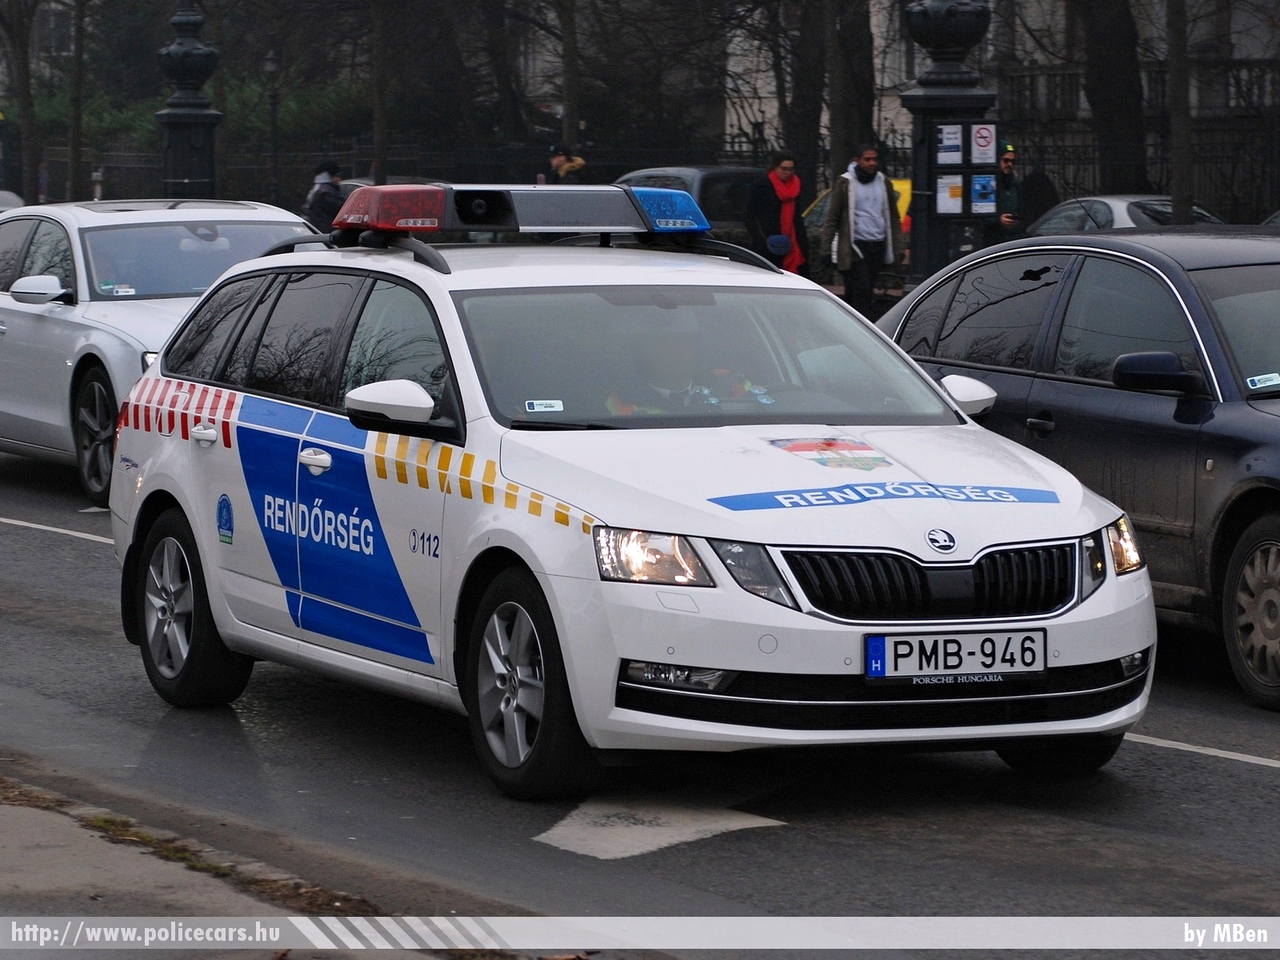 Skoda Octavia III Combi facelift, fotó: MBen
Keywords: magyar Magyarország rendőr rendőrautó rendőrség Hungary hungarian police policecar PMB-946 